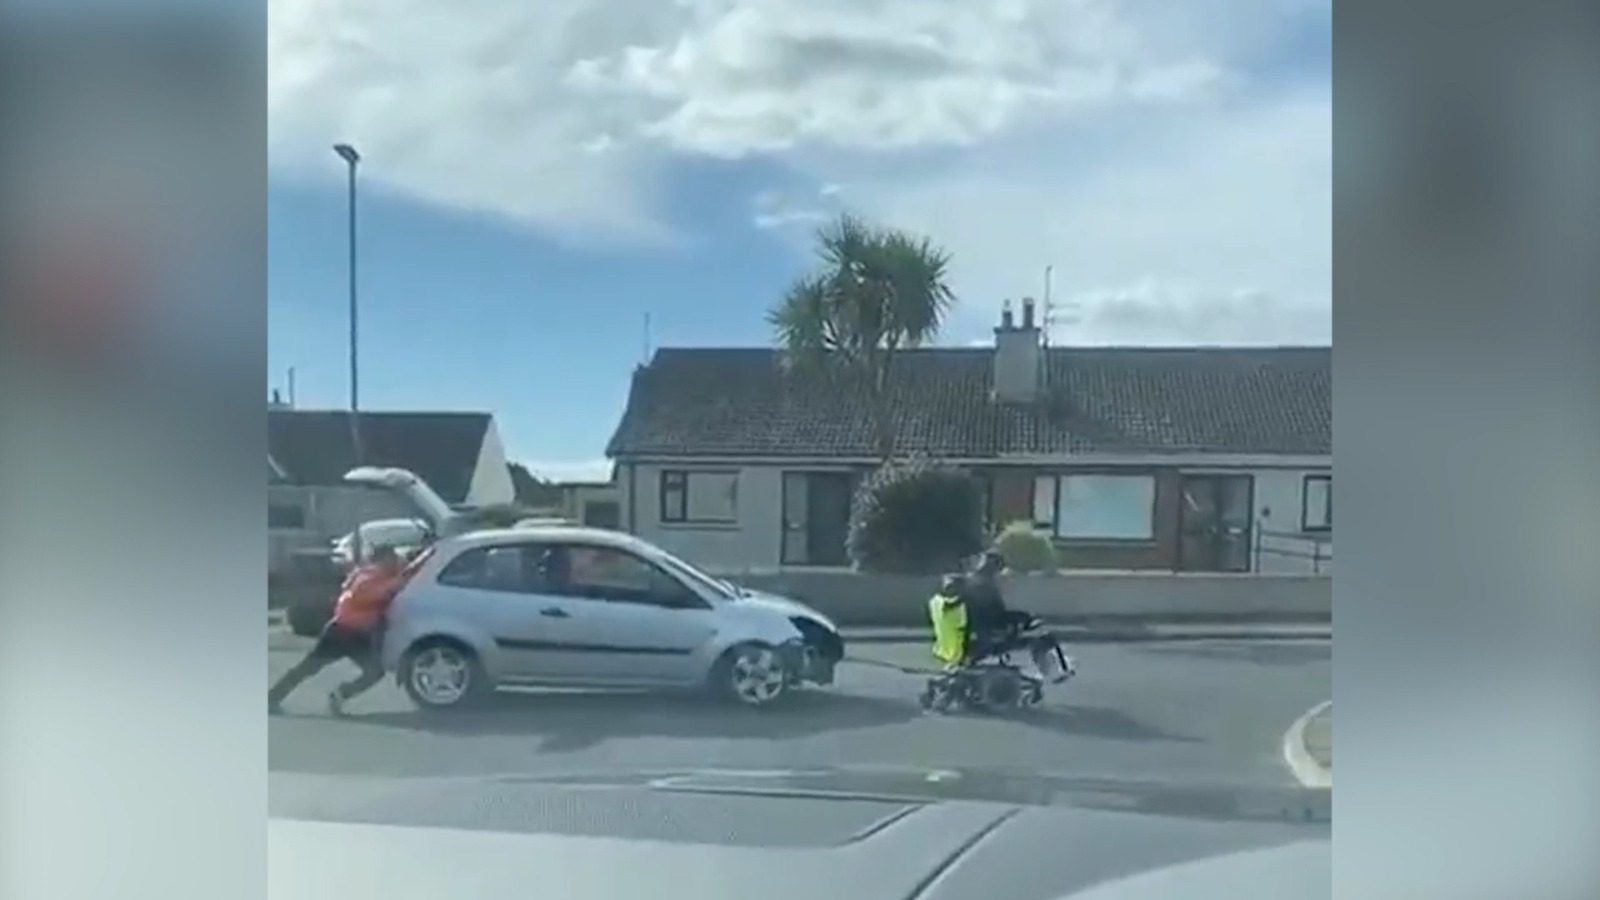 Dos personas tratan de remolcar un coche con una silla de ruedas motorizada.